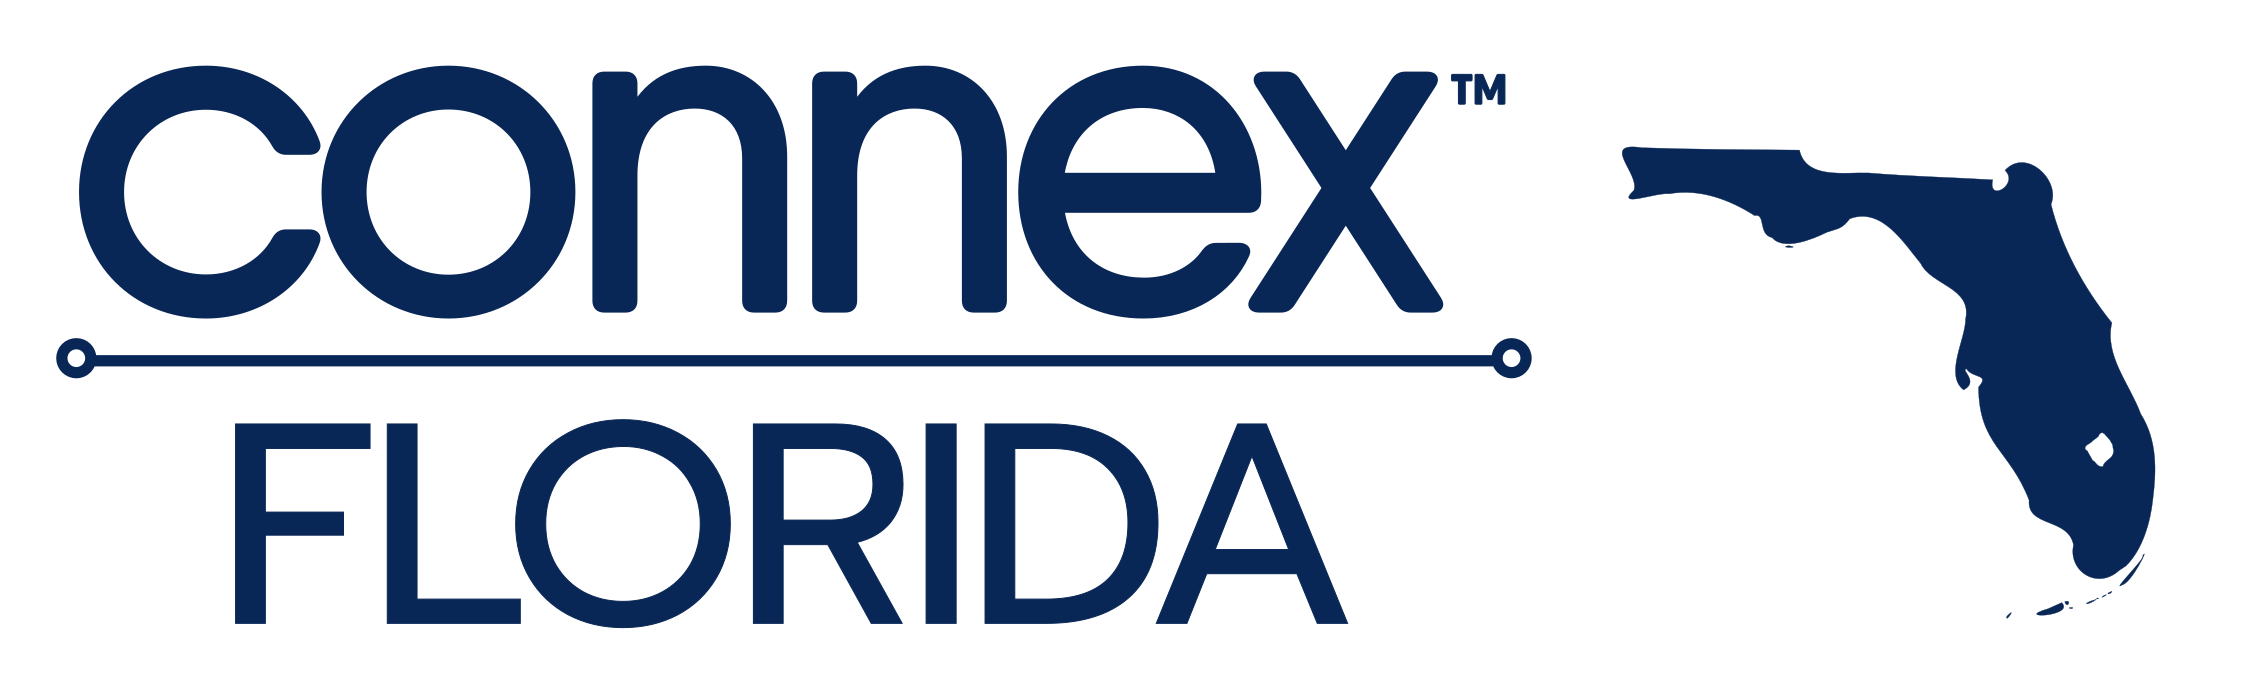 Connex-Florida-manufacturing